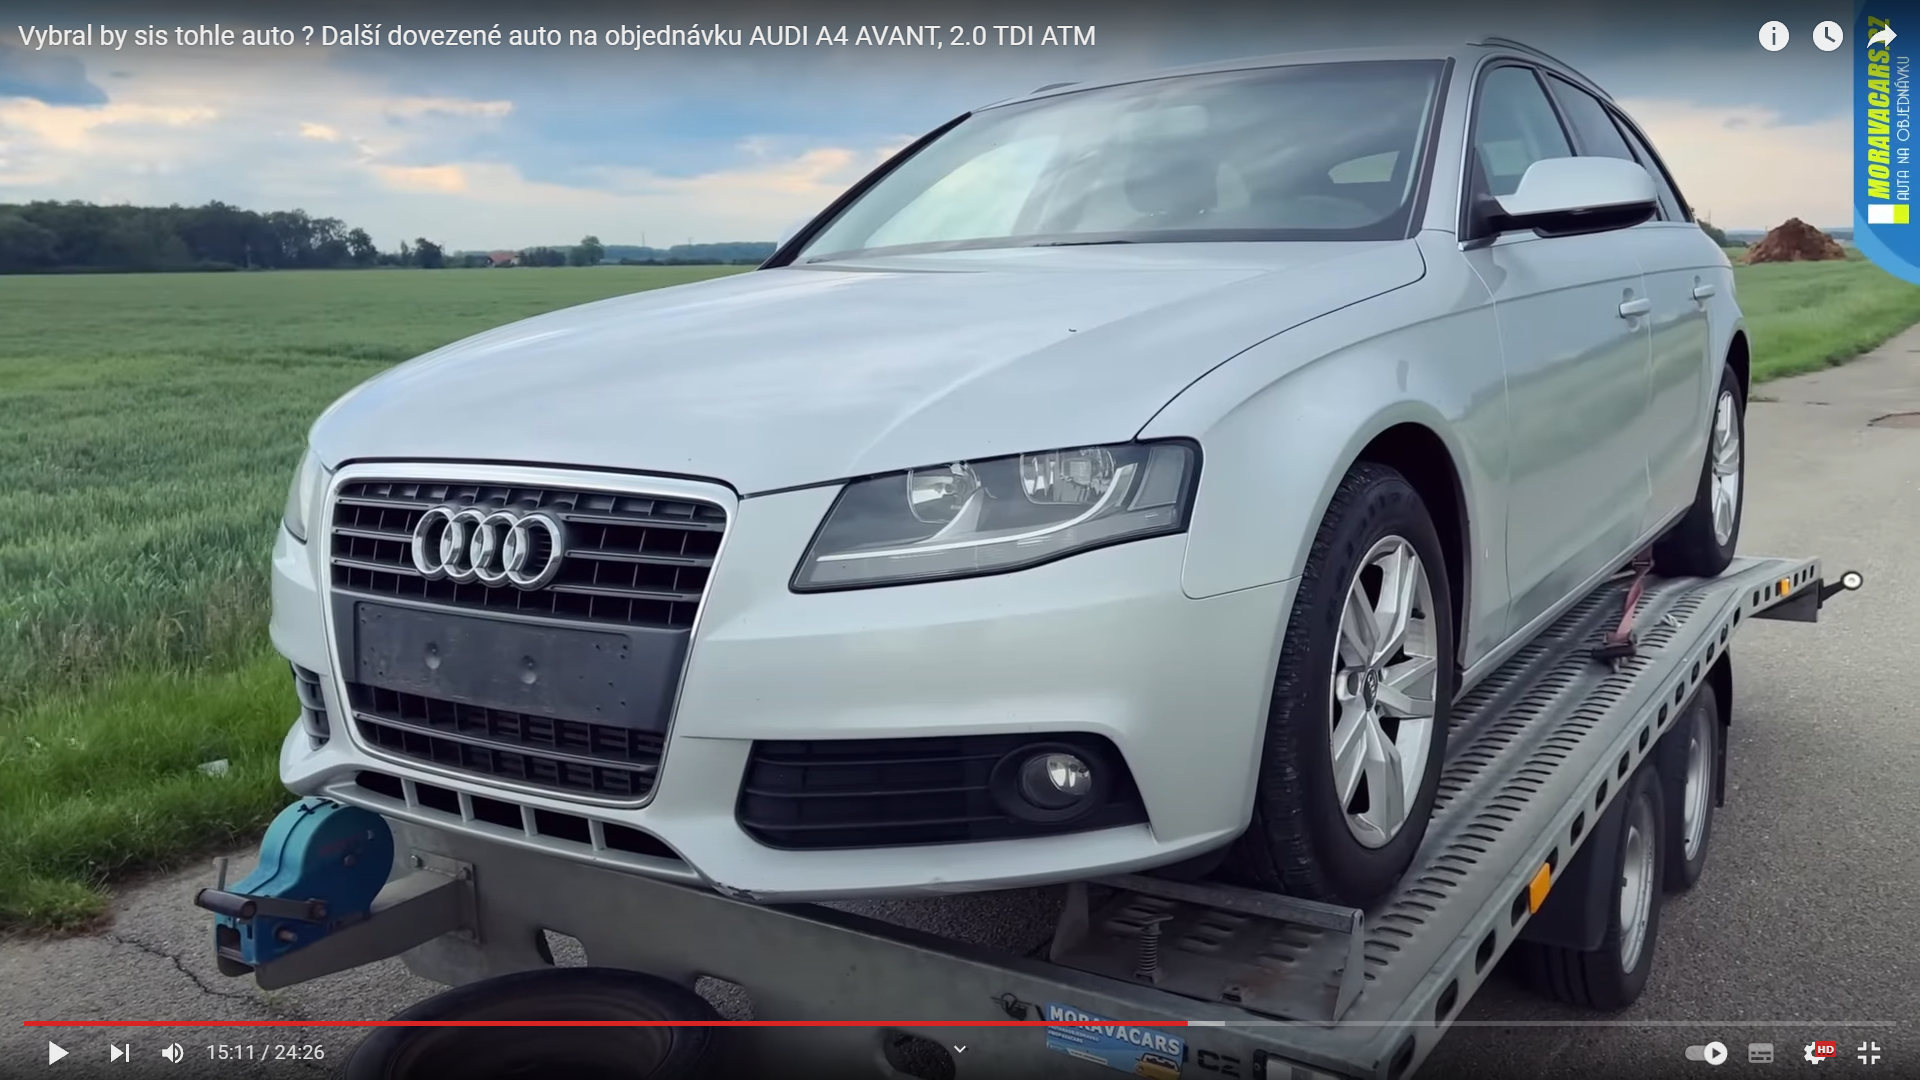 Další auto na objednávku, Audi A4 Avant.